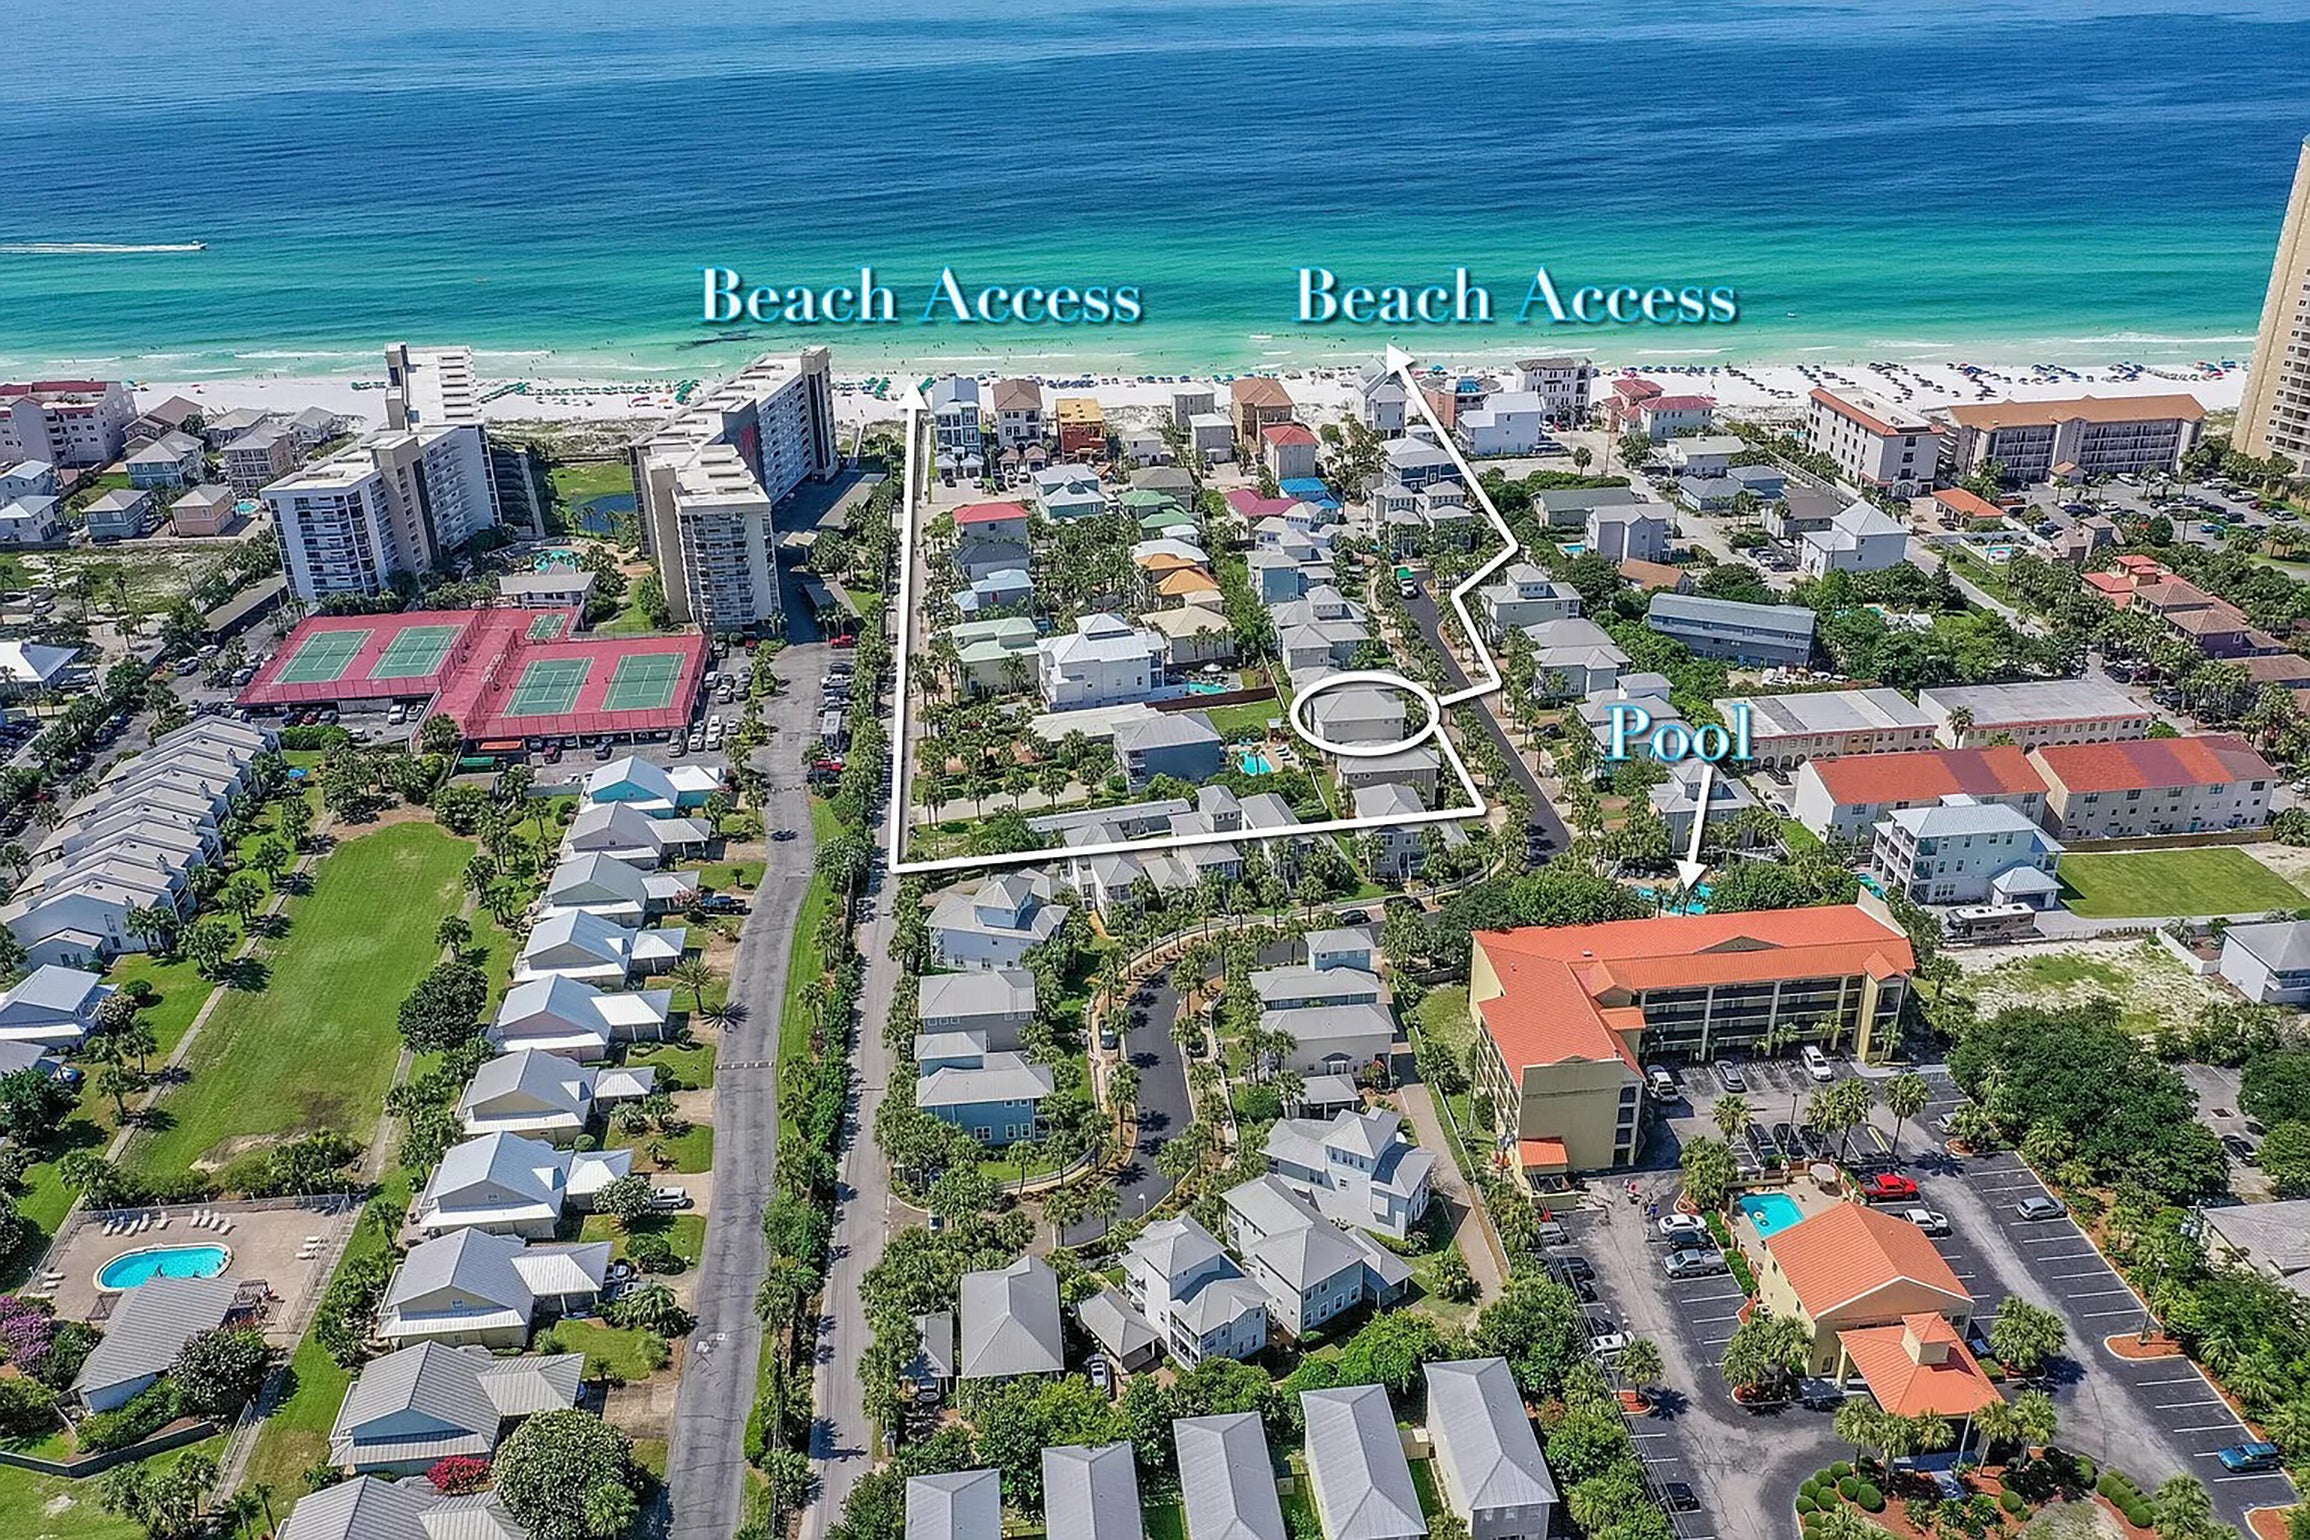 Aerial view of beach access